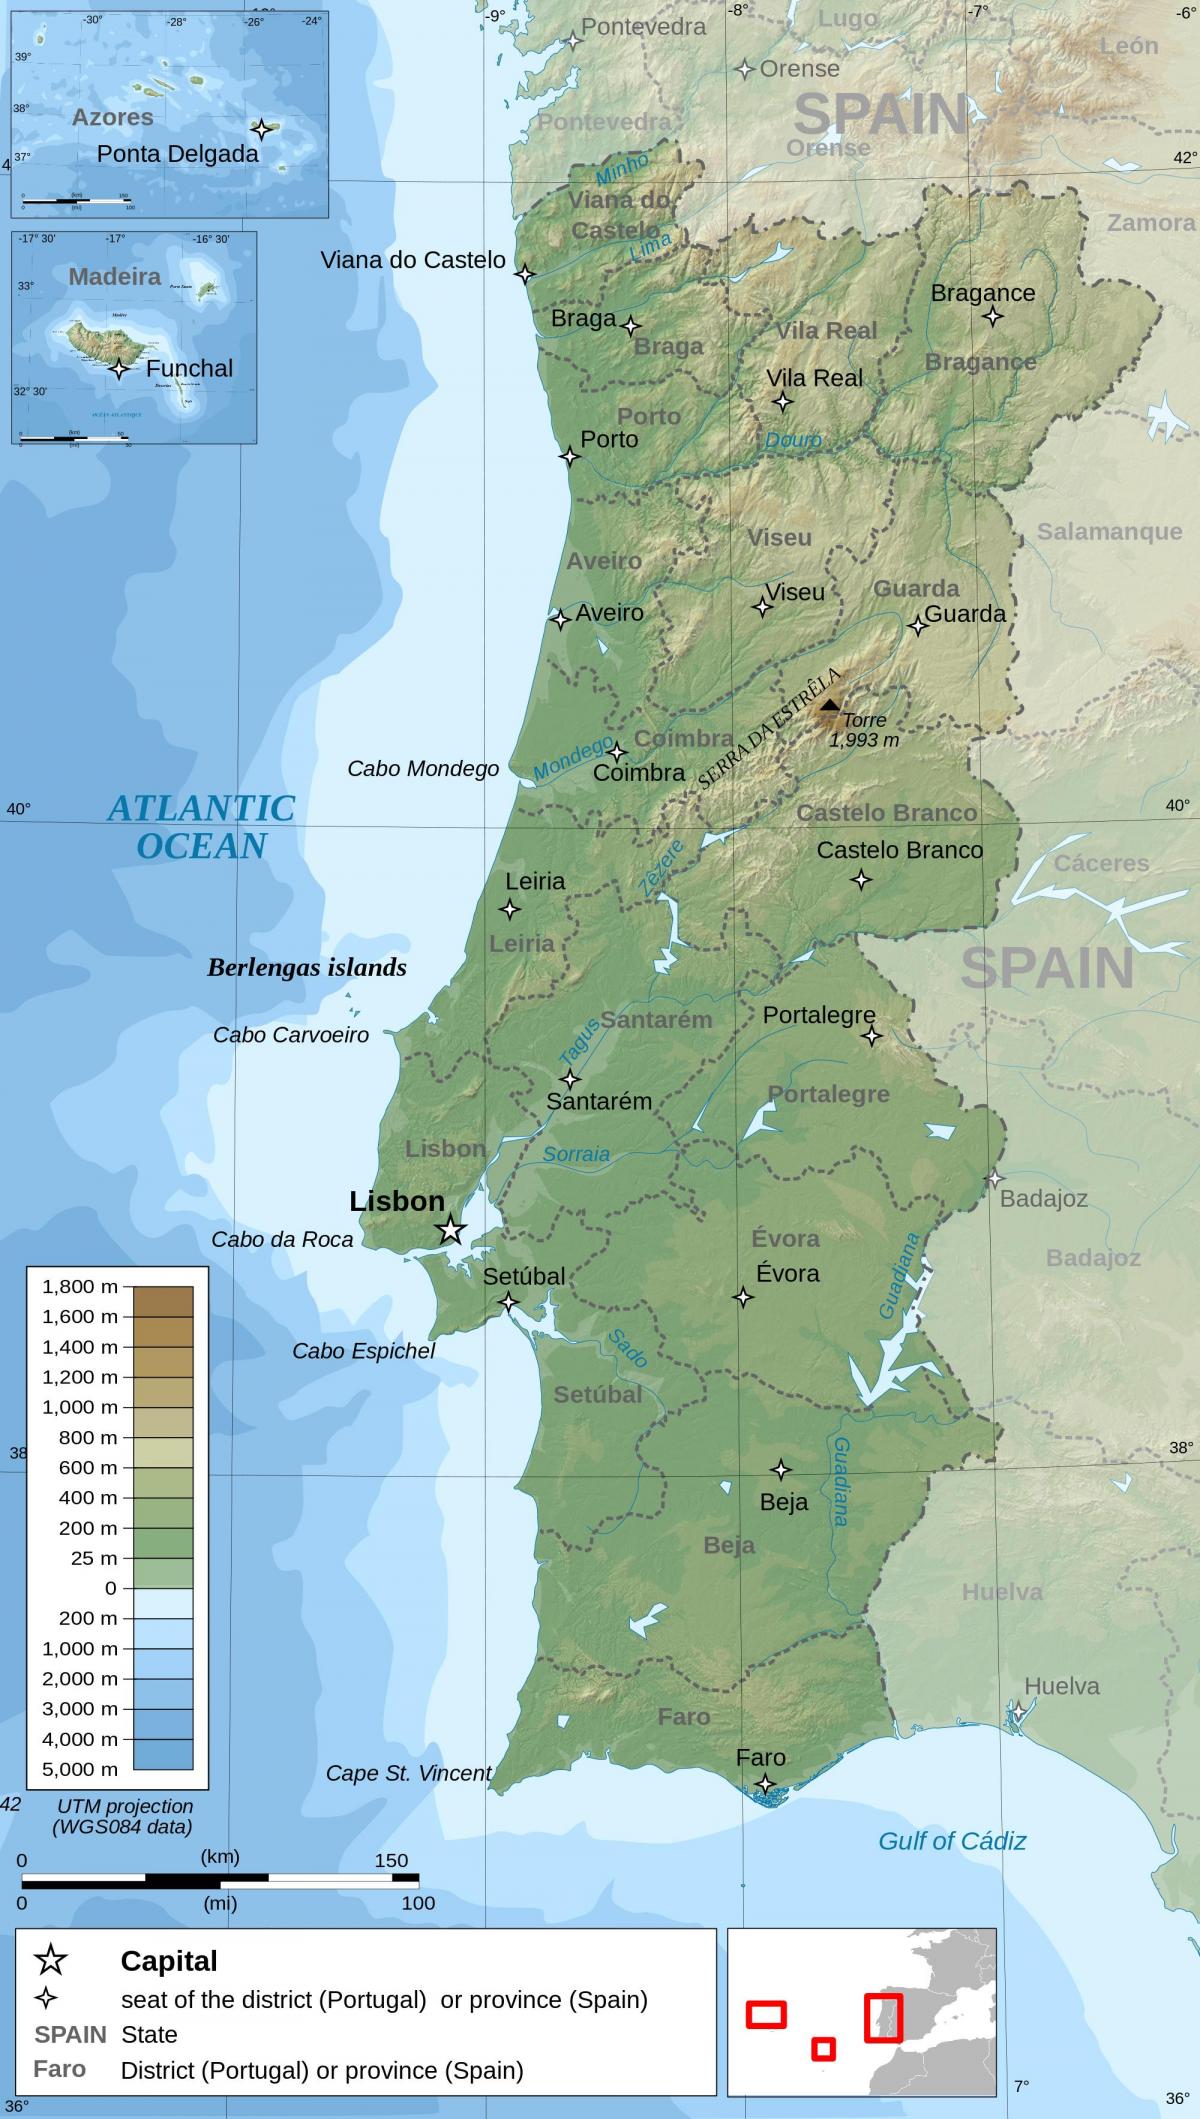 Mapa del relieve de Portugal